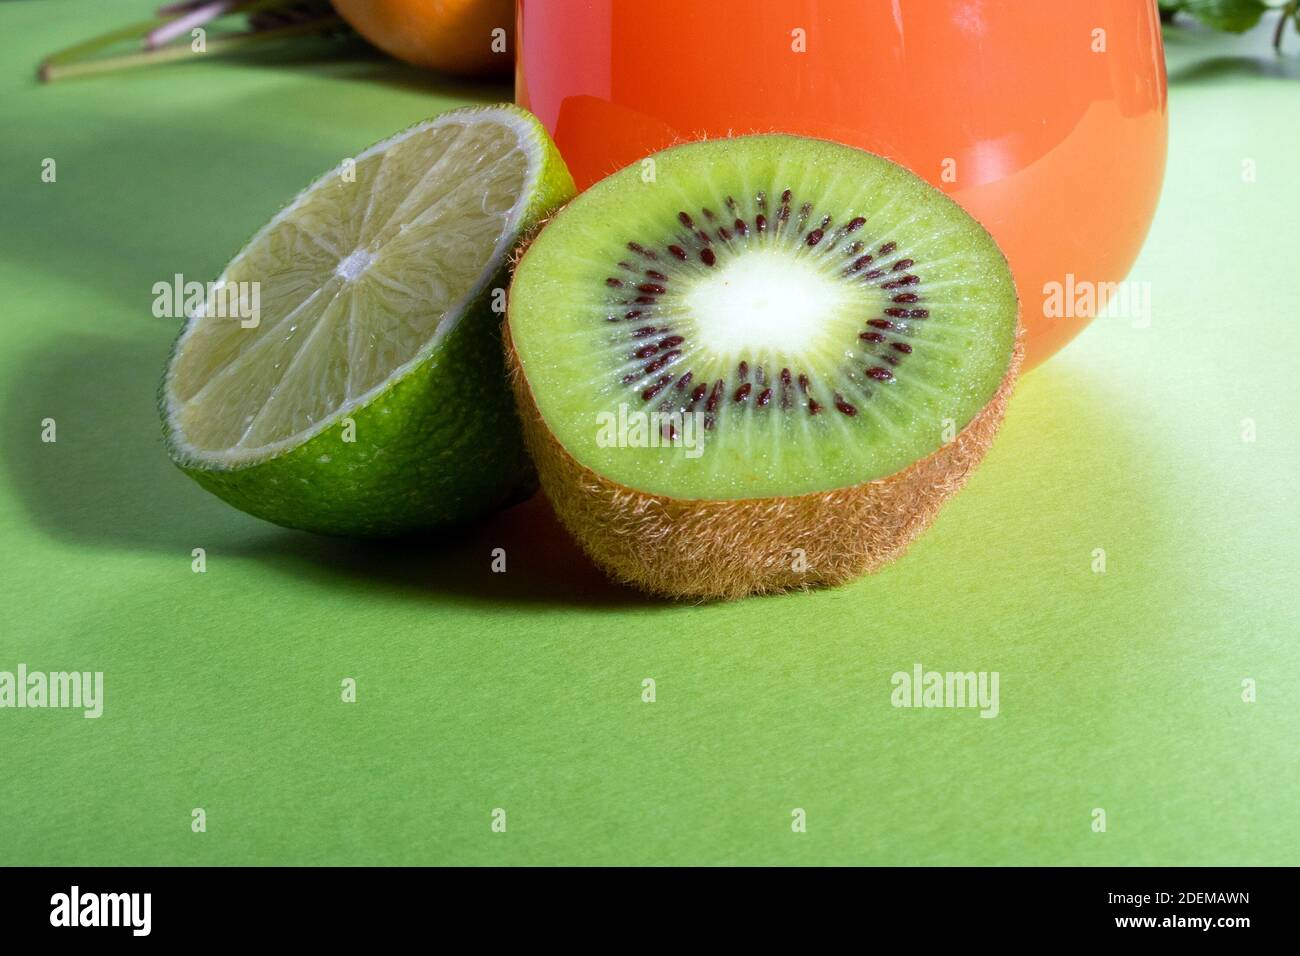 Composizione di bicchieri con succo d'arancia, lime, kiwi e verdure su sfondo verde chiaro Foto Stock